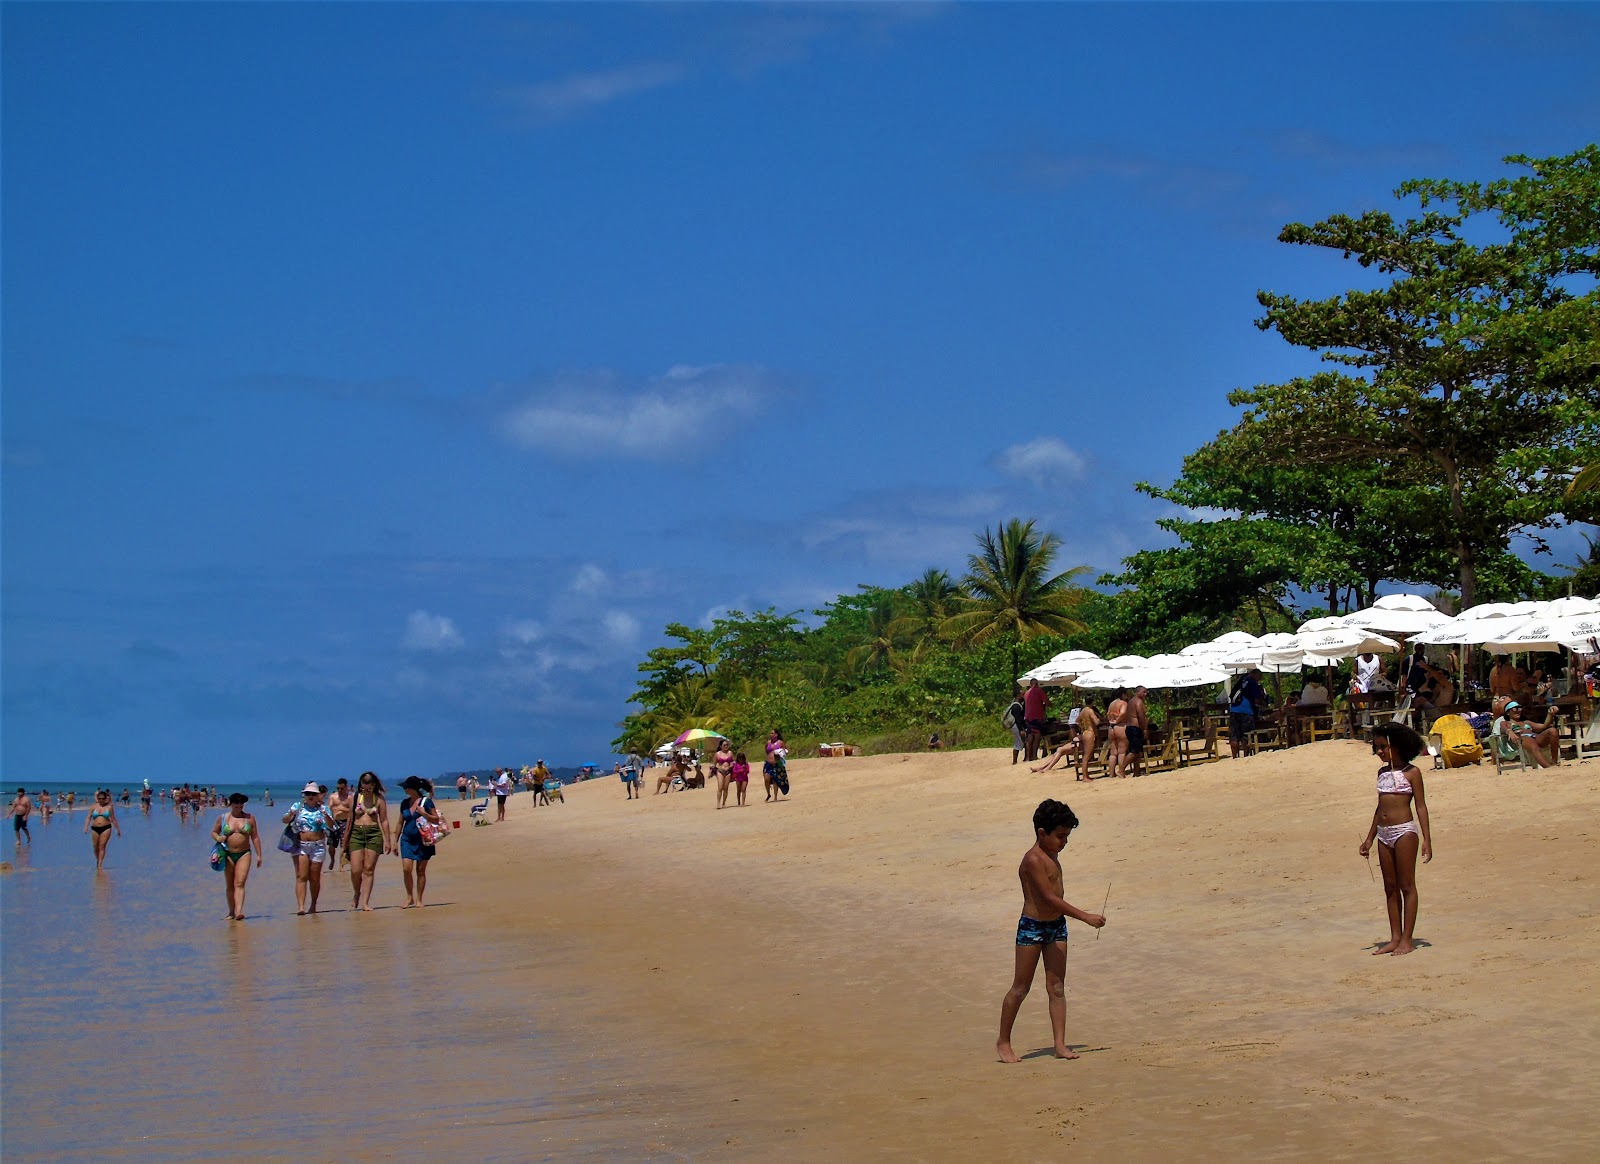 Praia Do Mundai'in fotoğrafı geniş plaj ile birlikte